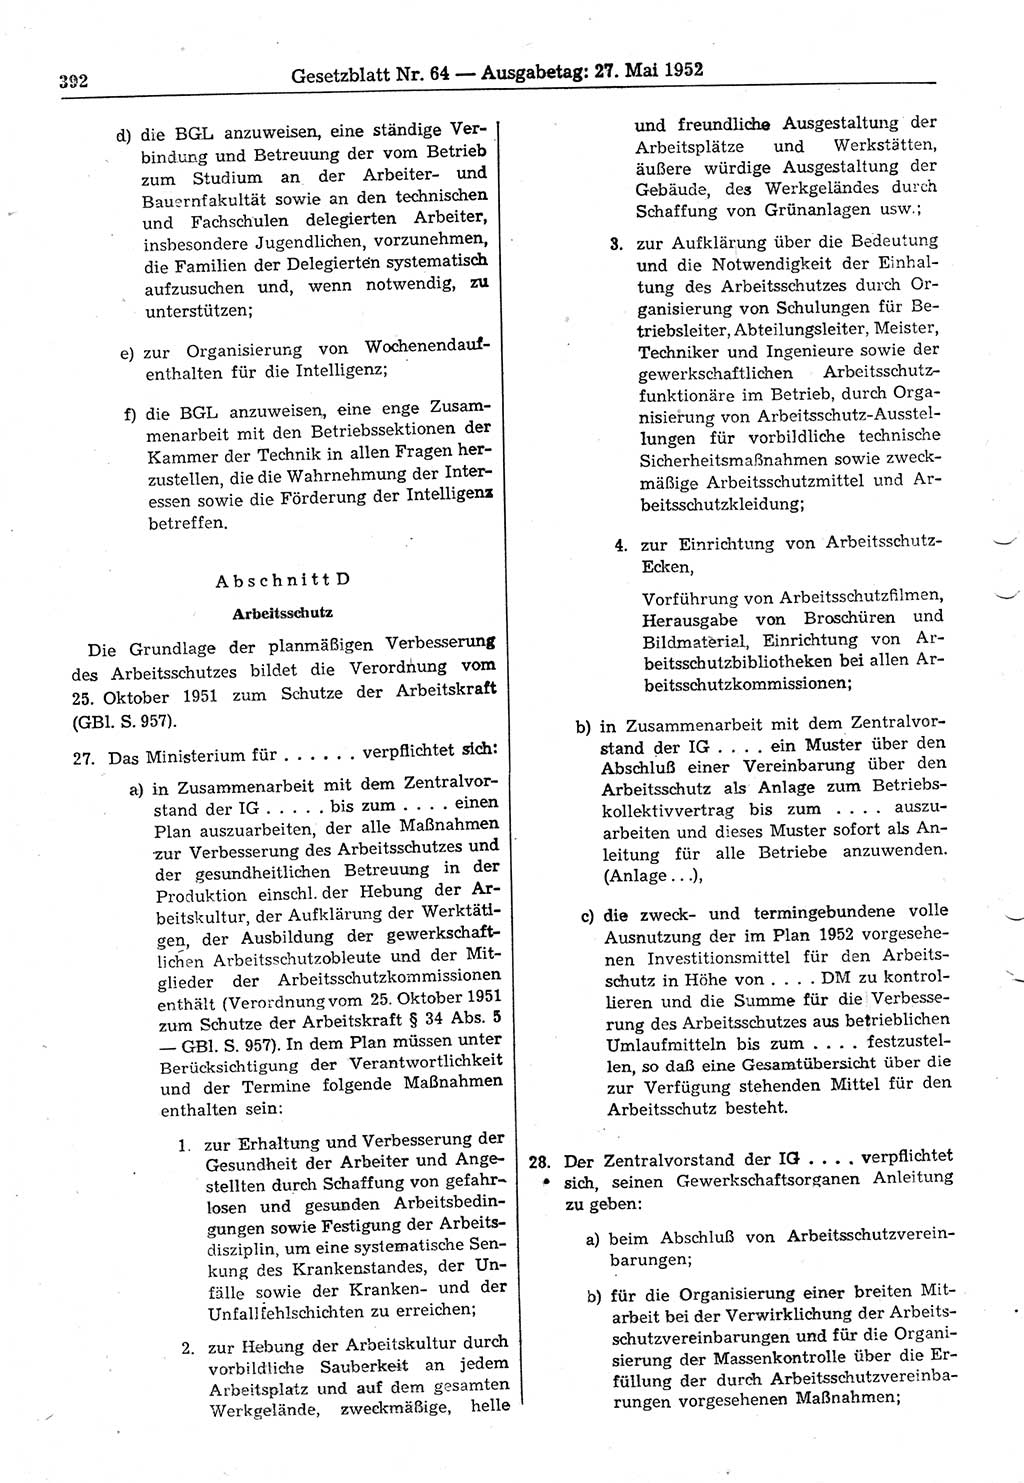 Gesetzblatt (GBl.) der Deutschen Demokratischen Republik (DDR) 1952, Seite 392 (GBl. DDR 1952, S. 392)